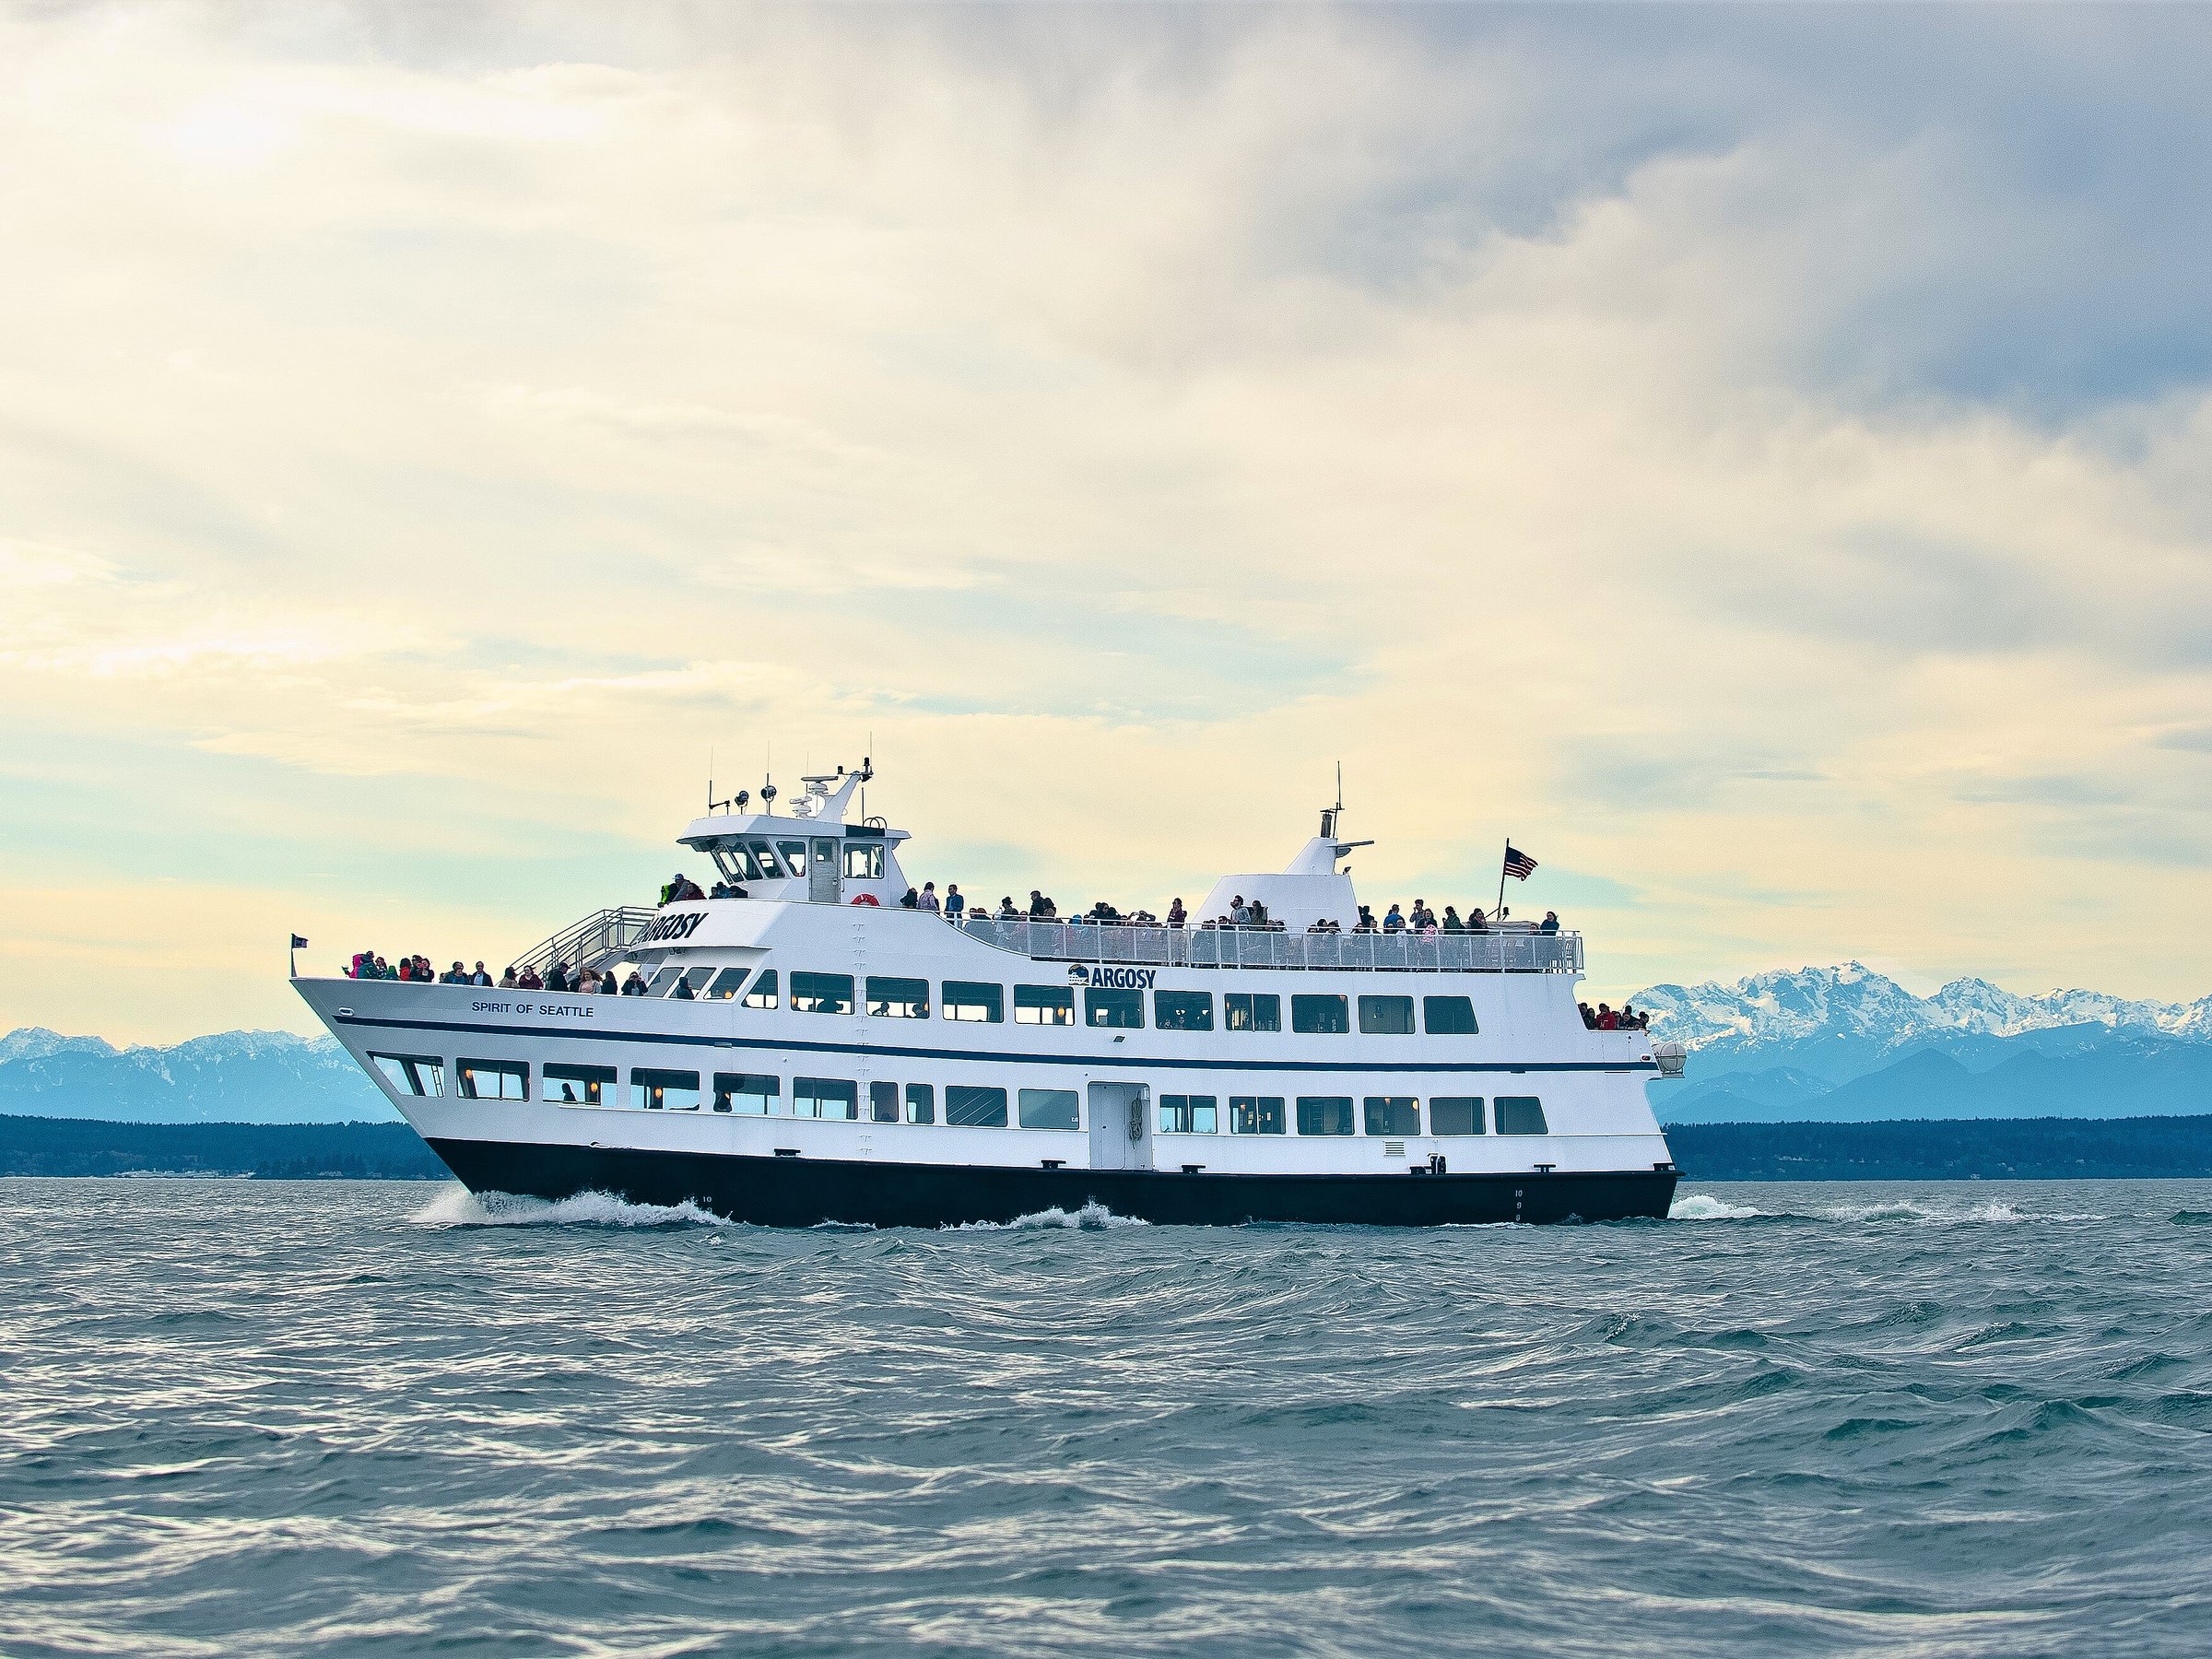 argosy cruises seattle waterfront seattle wa